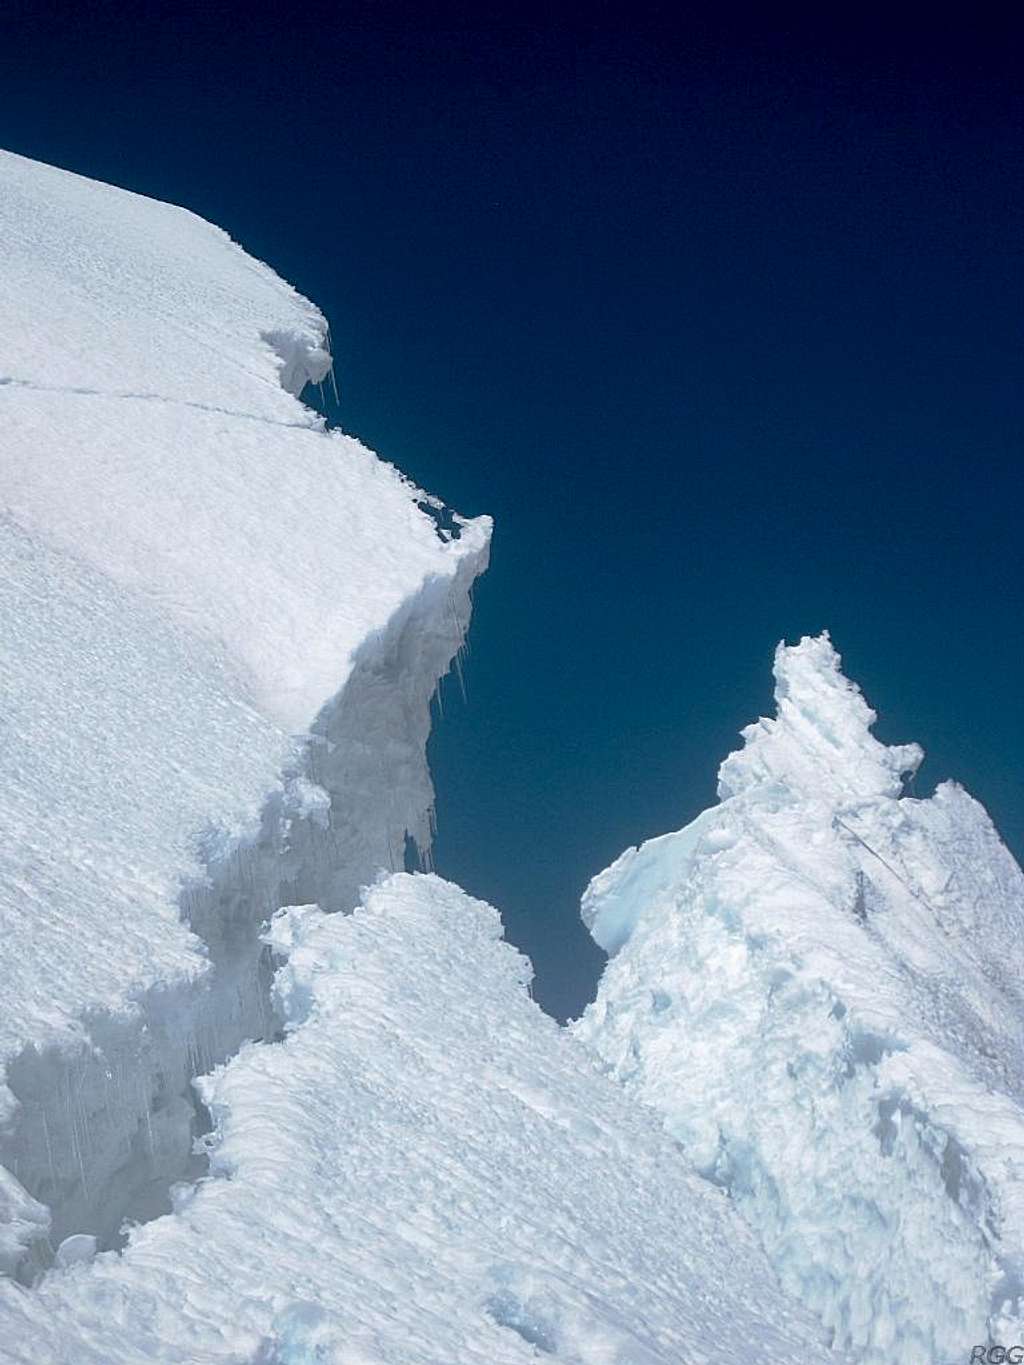 Ice formations on Huascarán